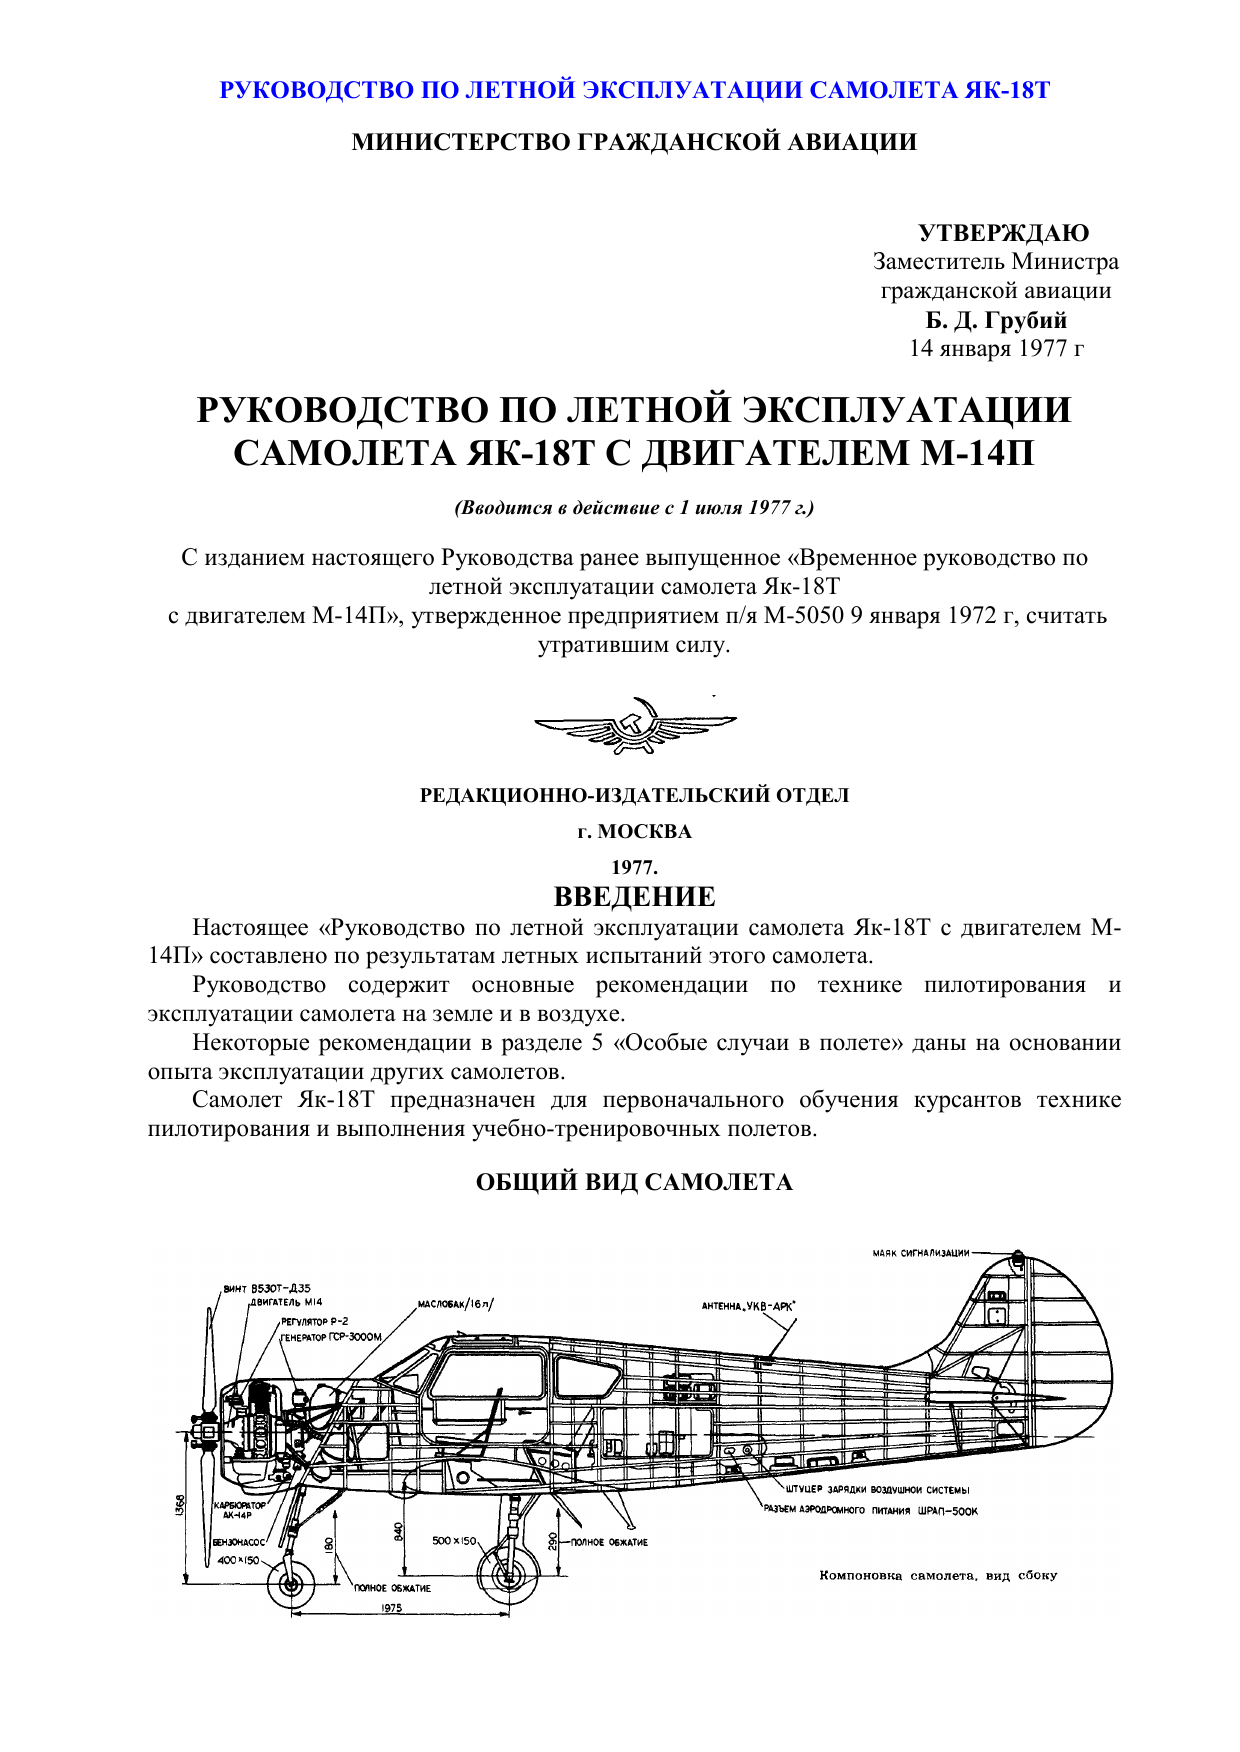 Як-52 – самолёт для новичков и мастеров пилотажа